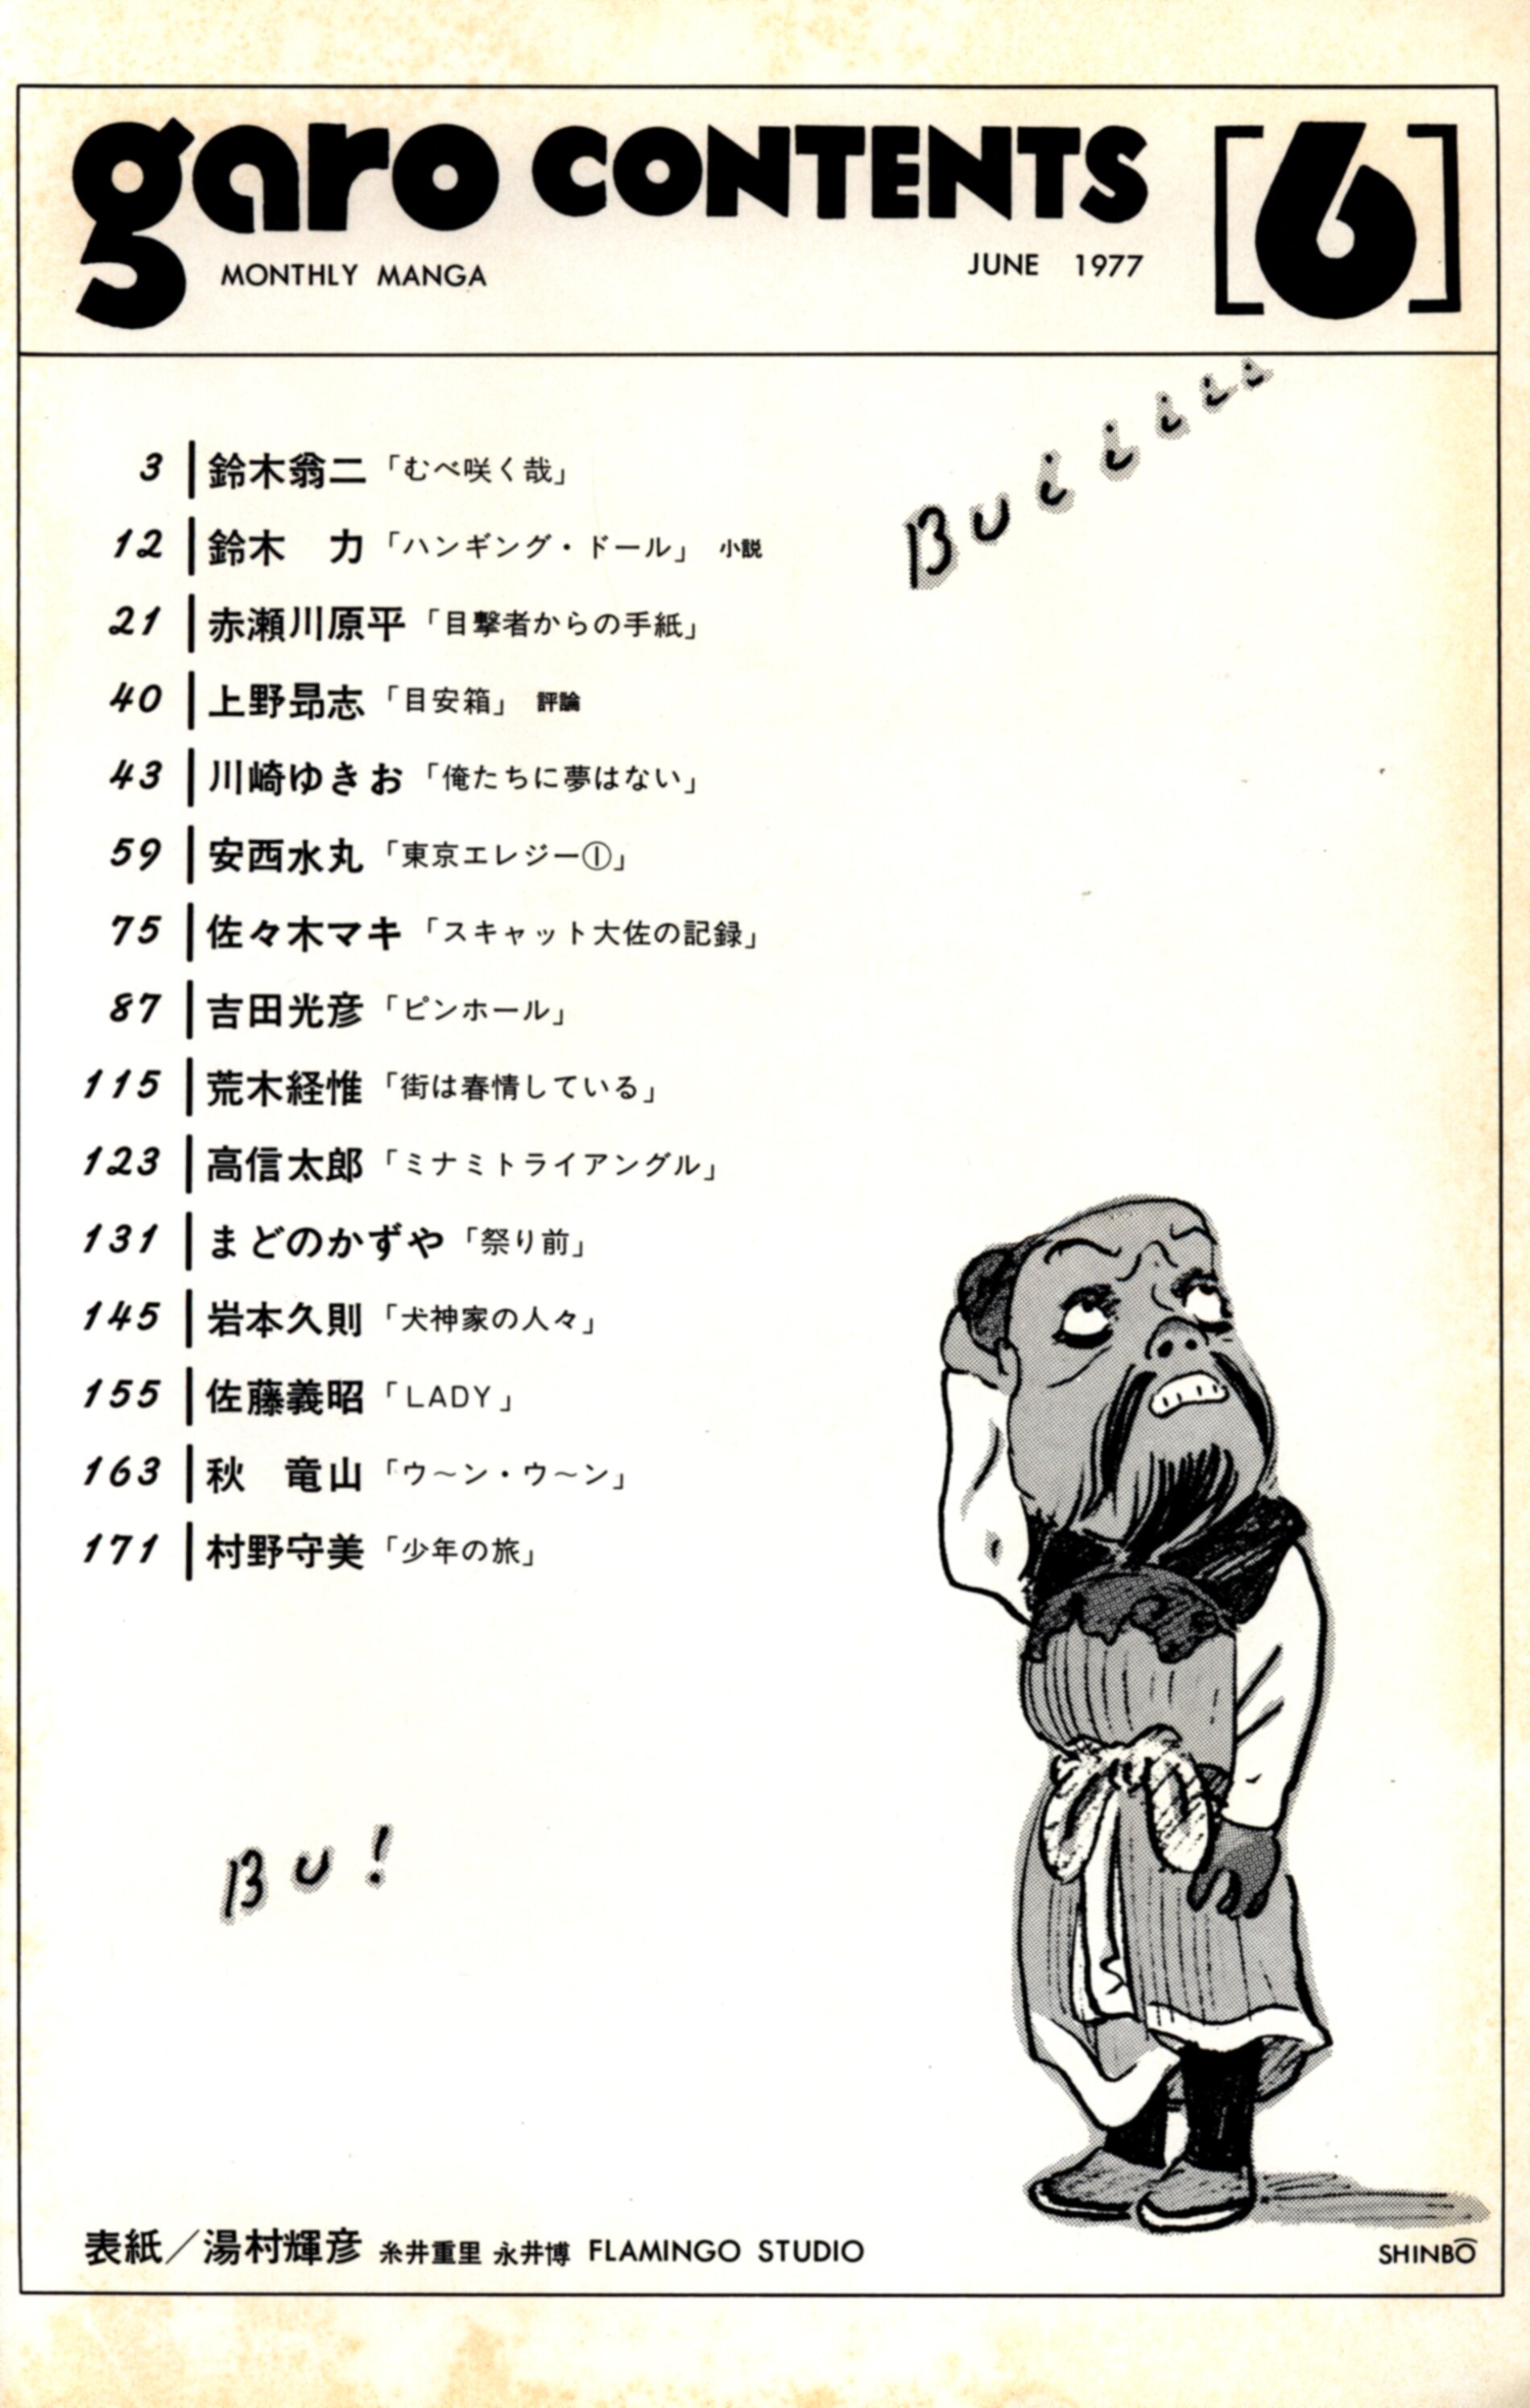 月刊漫画 ガロ No.163 1977年 5月号